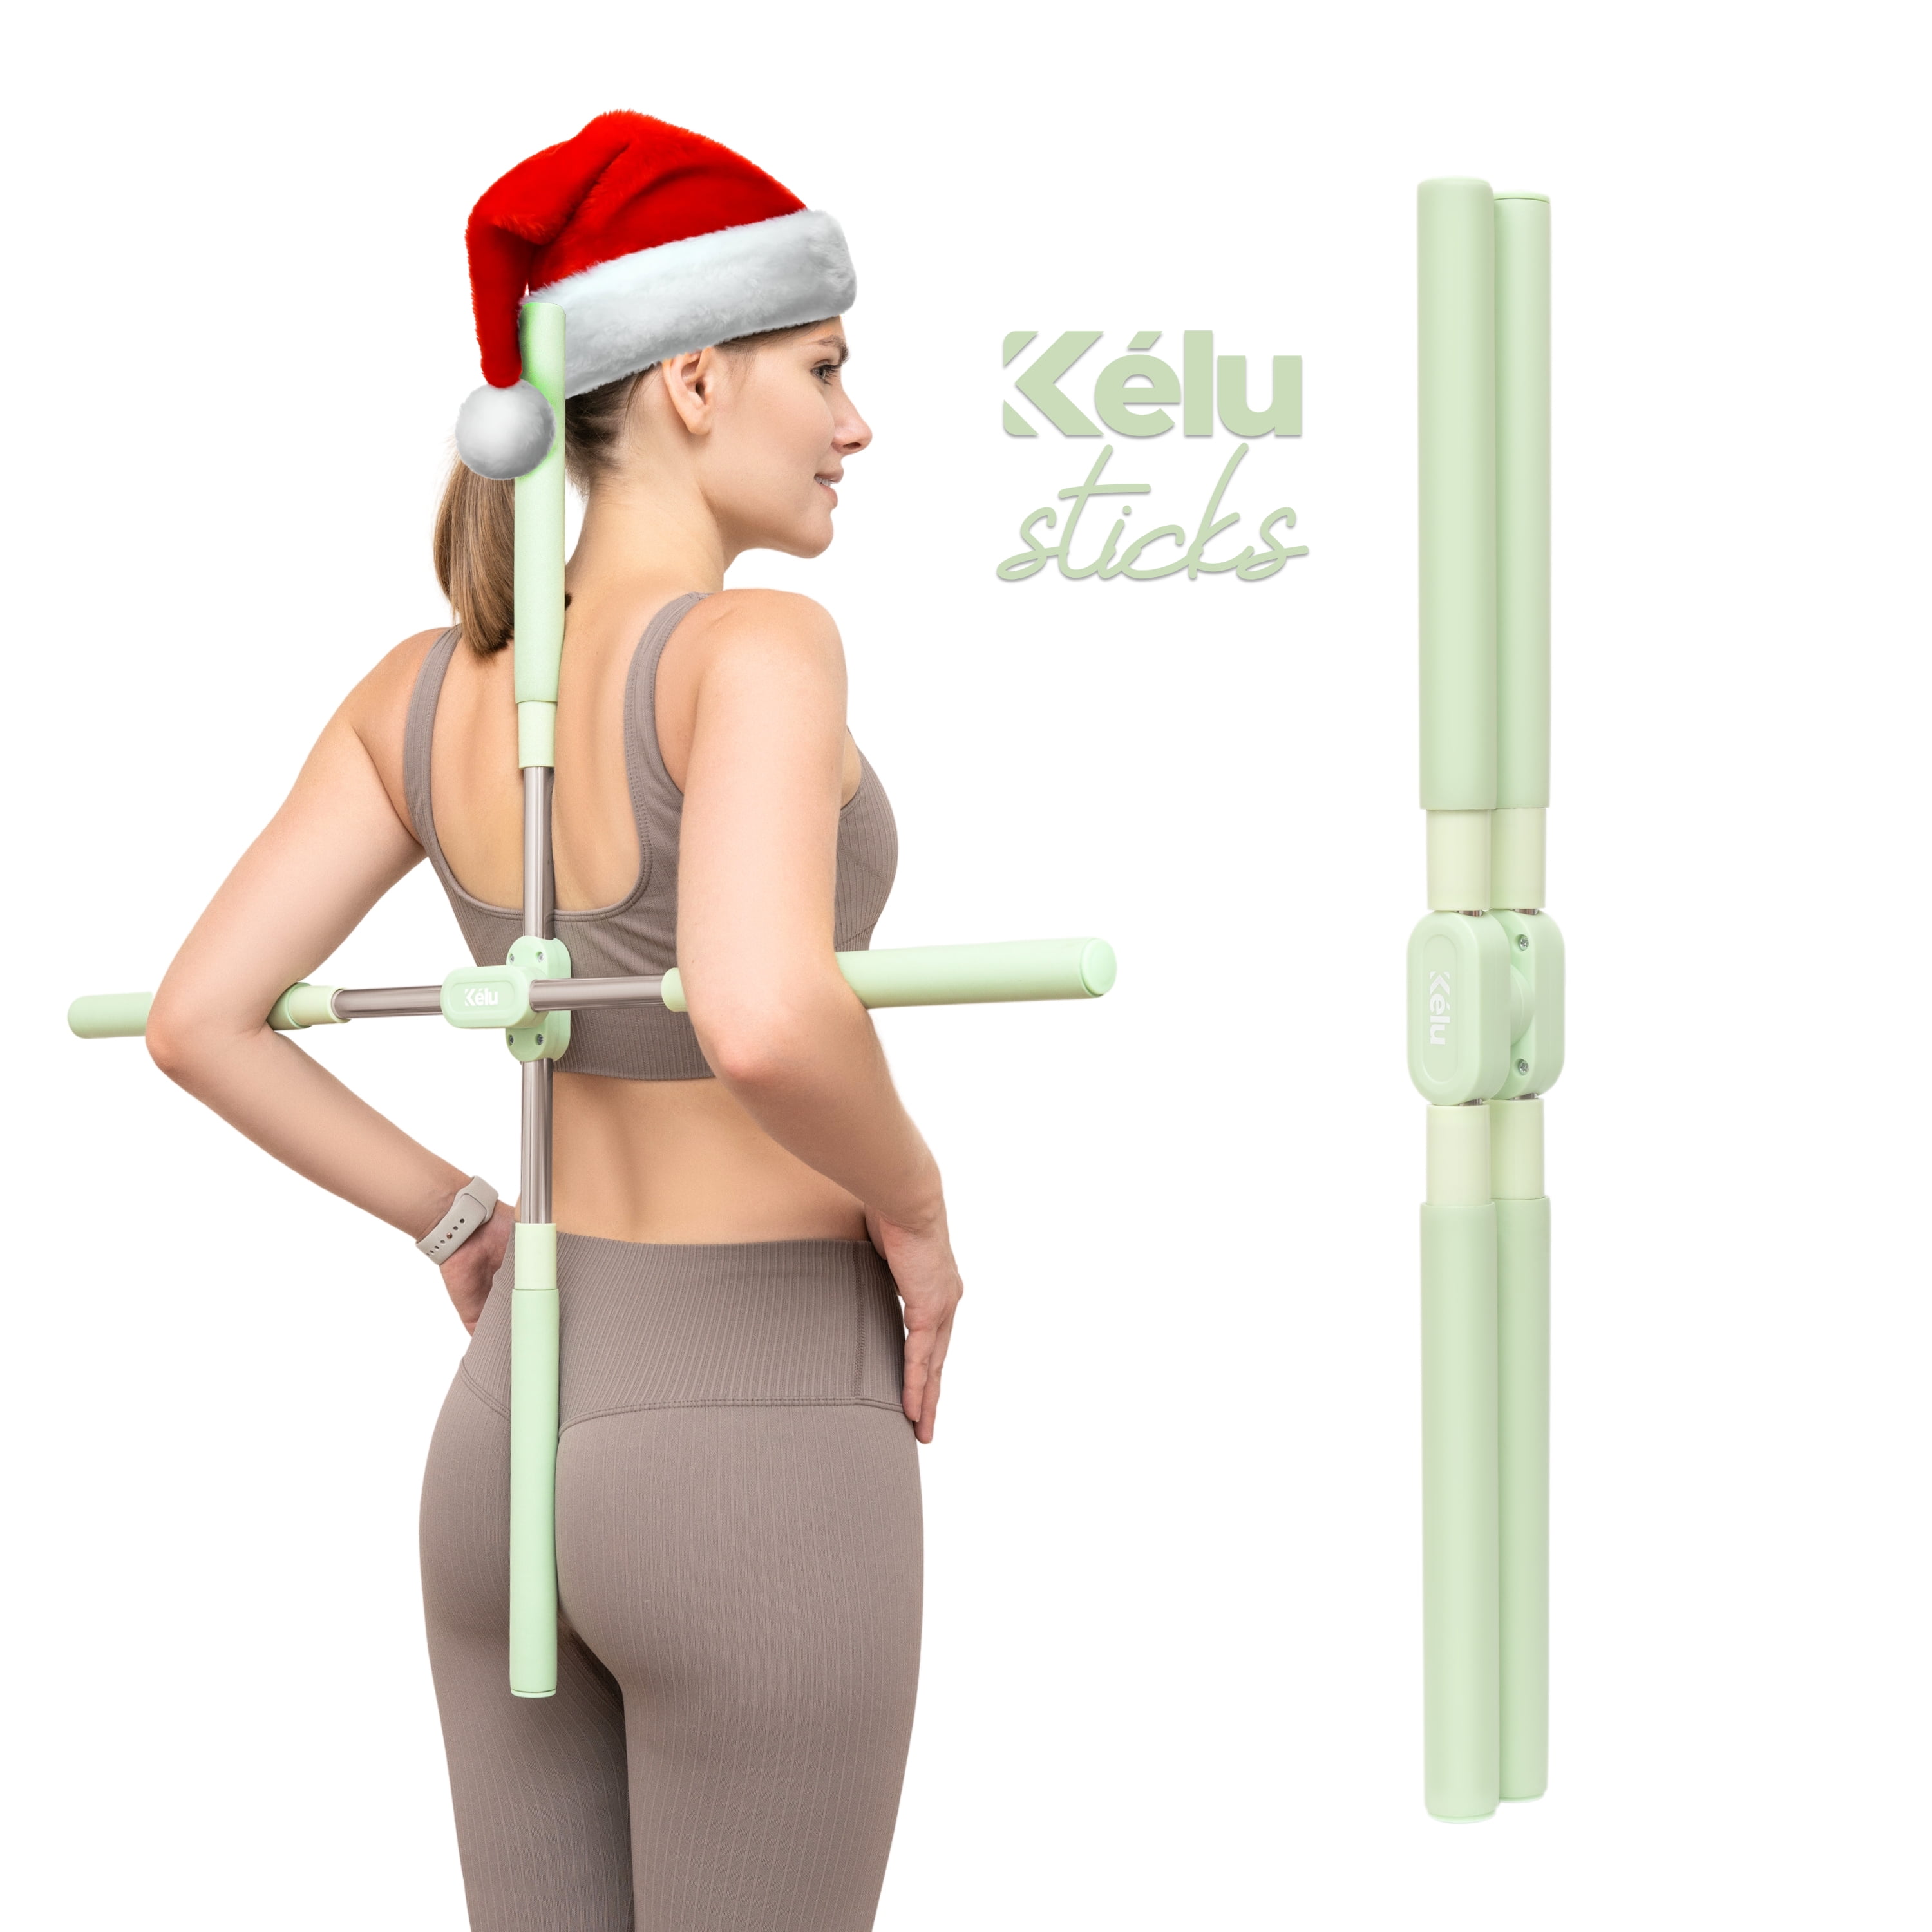 Kélu Yoga Sticks for Posture Correction: Upper and Lower Back